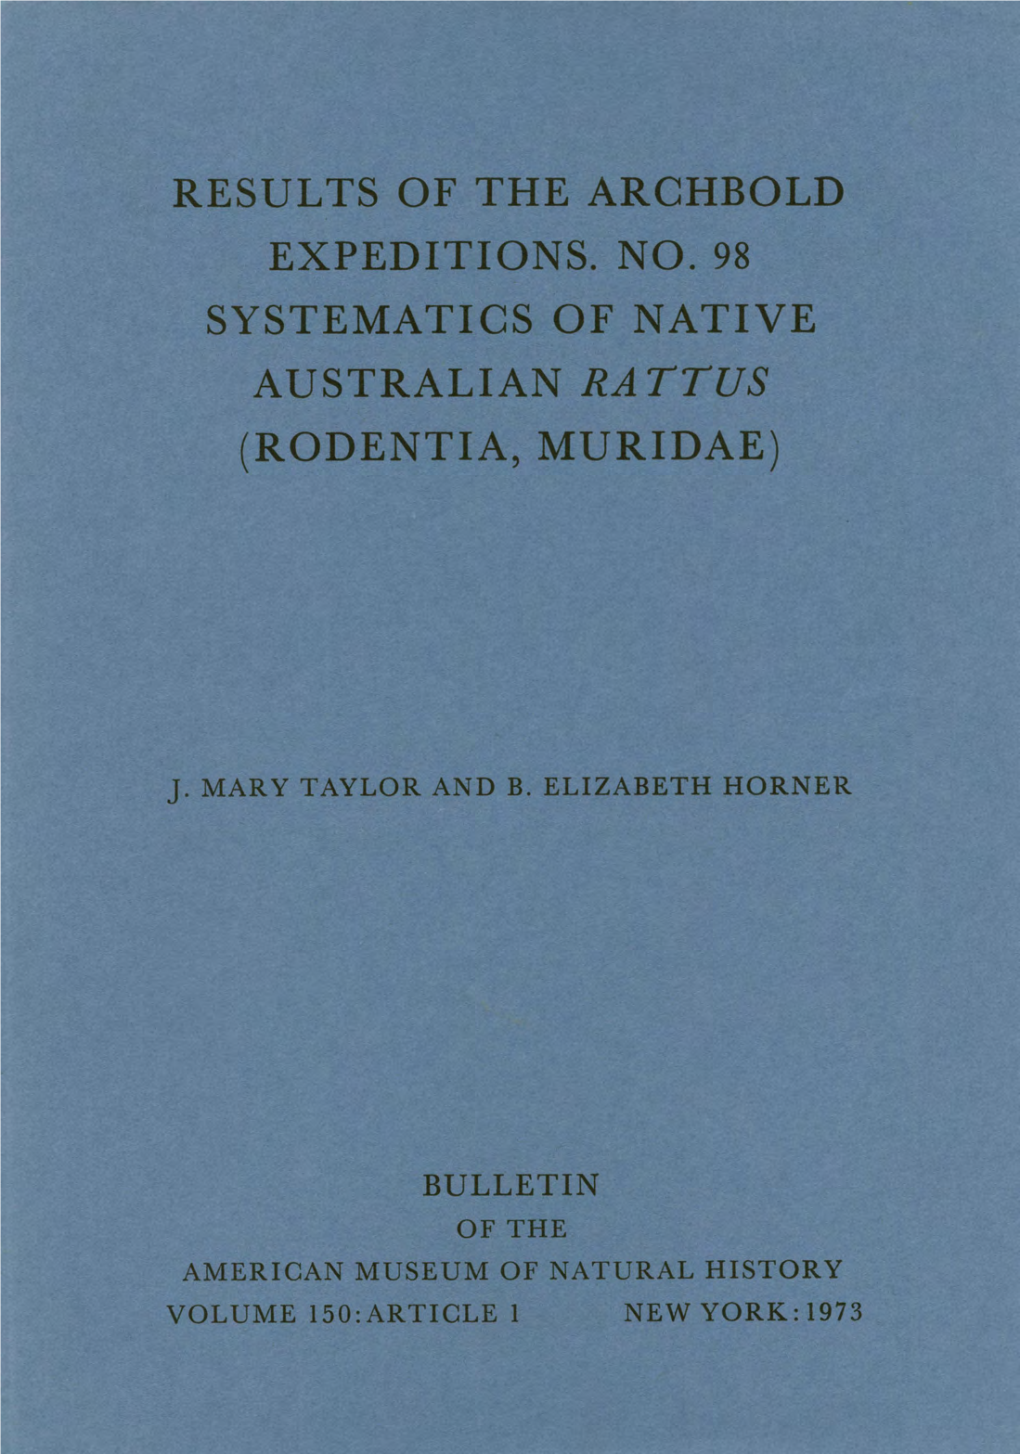 Systemati-Cs of Native Australian Rattus (Rodentia, Muridae)